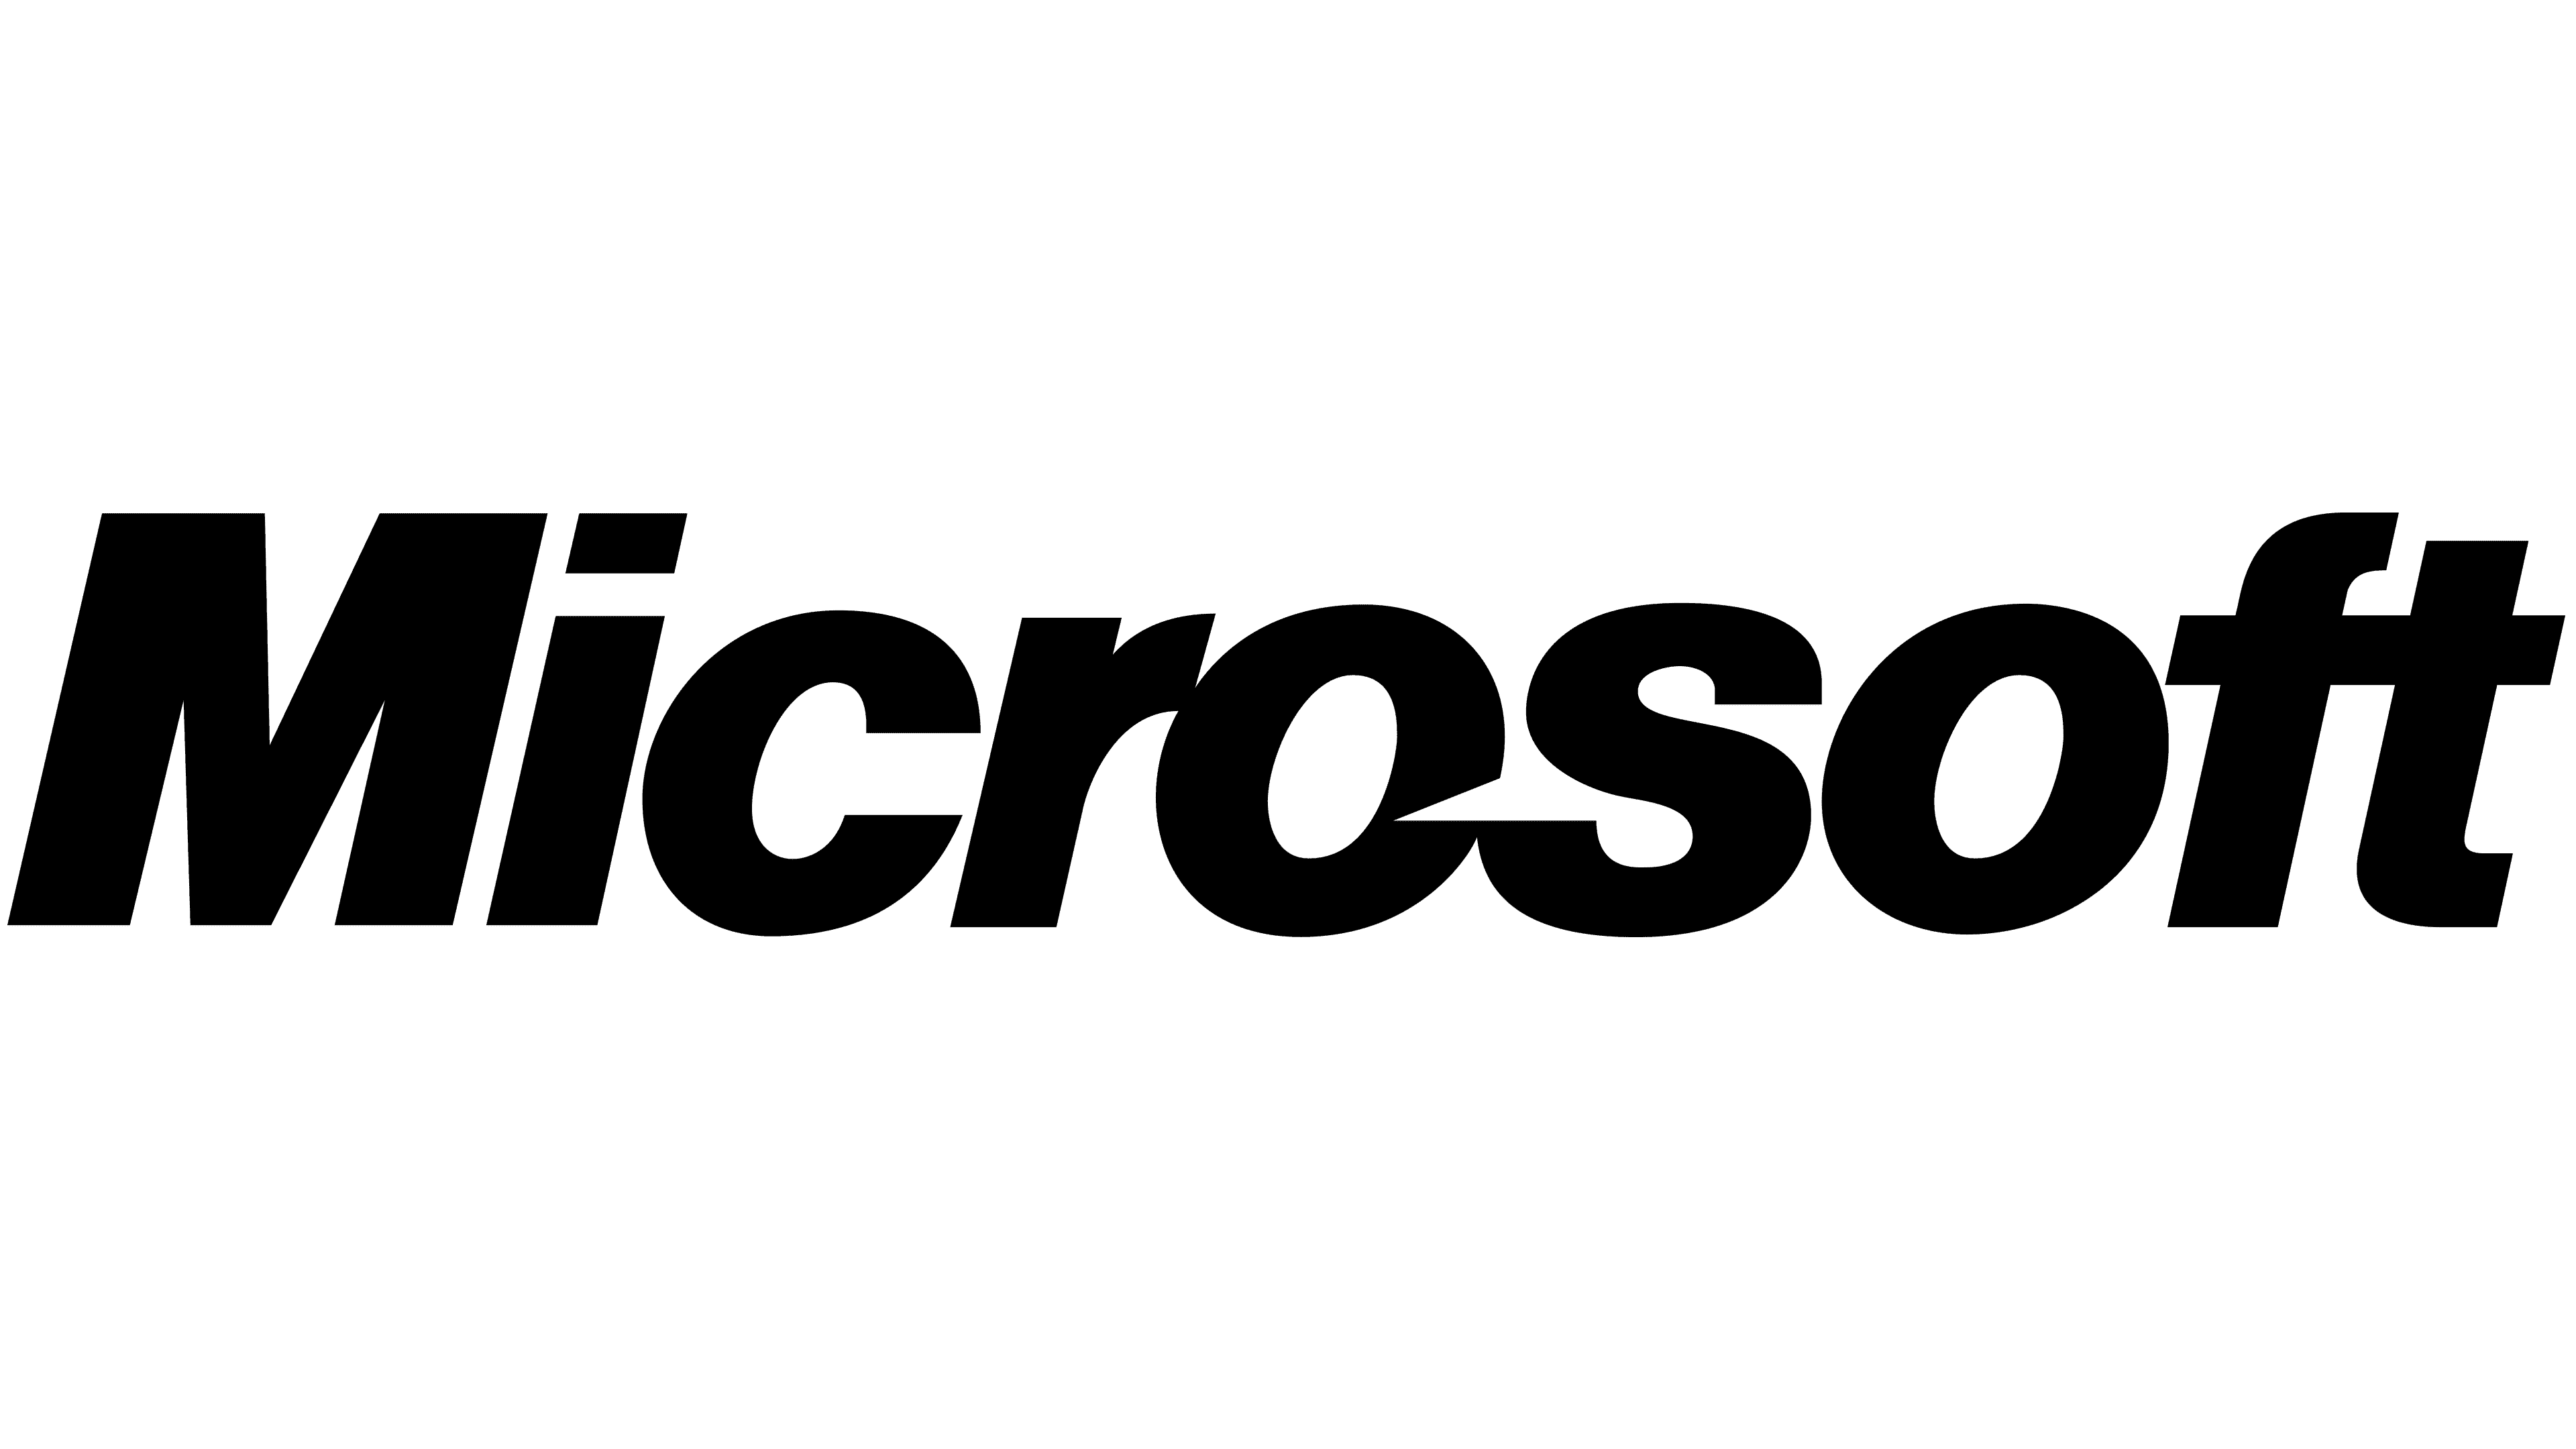 Microsoft Teams Logo - PNG and Vector - Logo Download